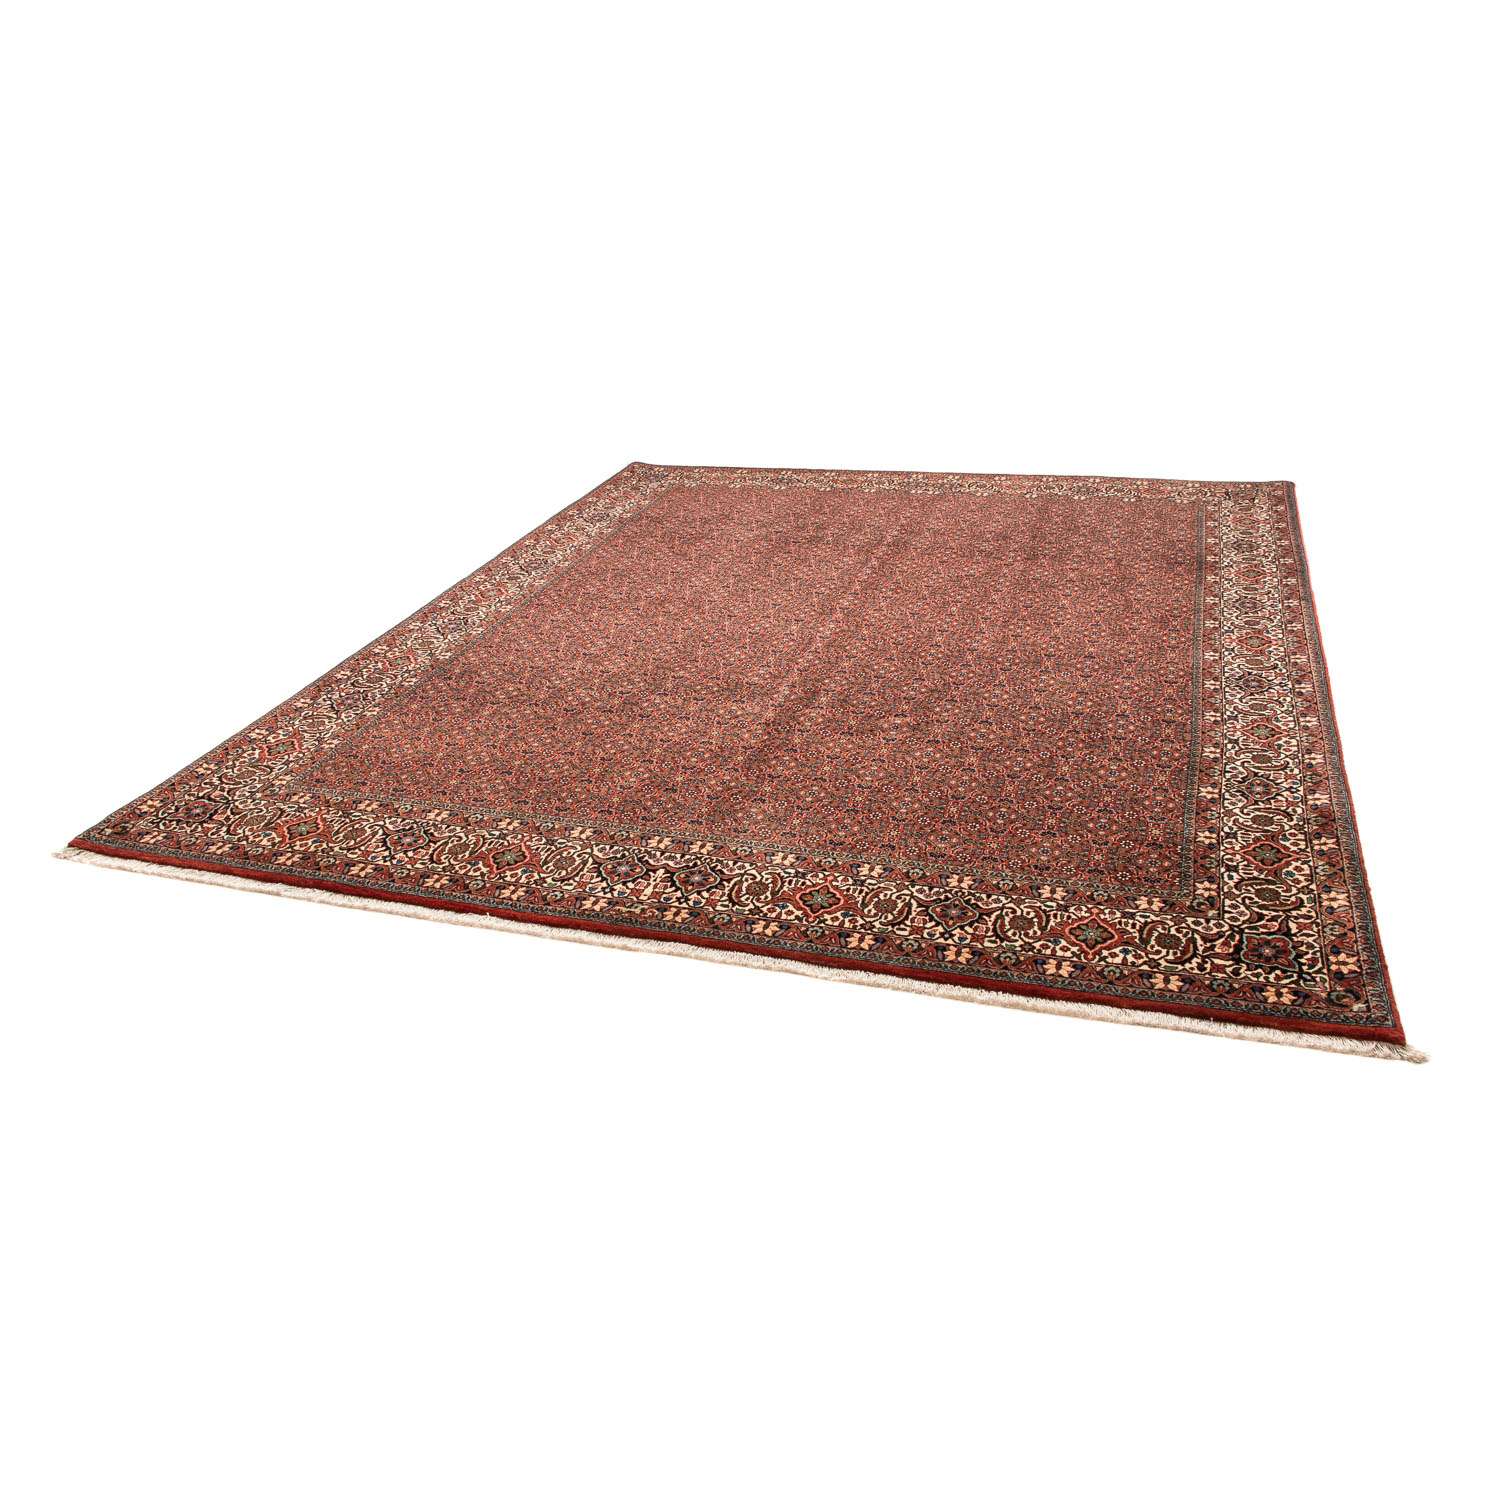 Perzisch tapijt - Bijar - 308 x 254 cm - donkerrood